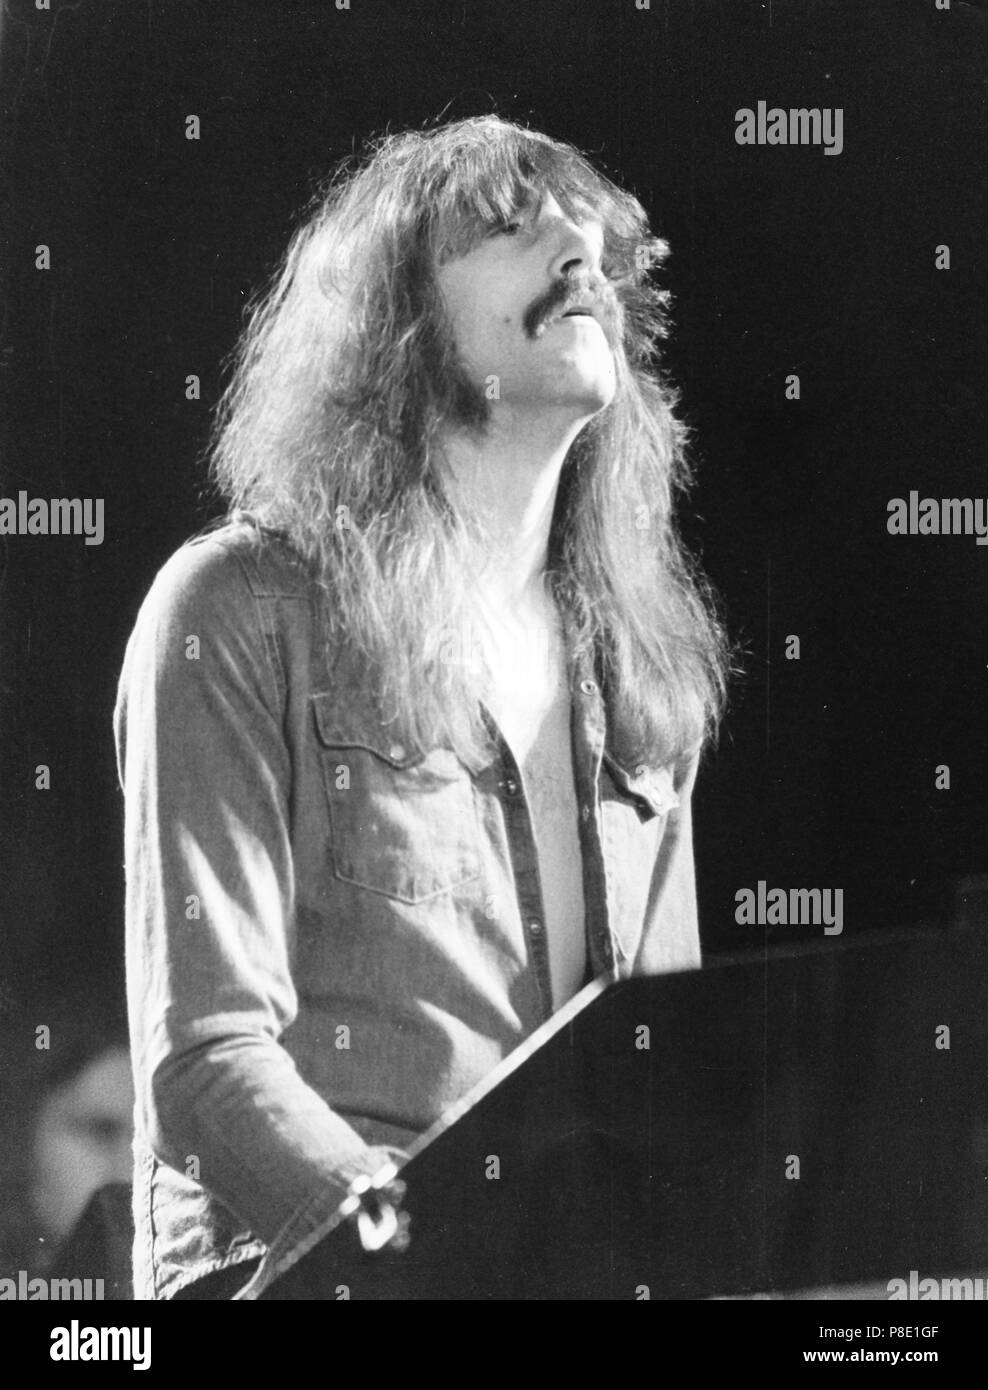 Deep Purple, Jon Lord, 1974 Stockfoto